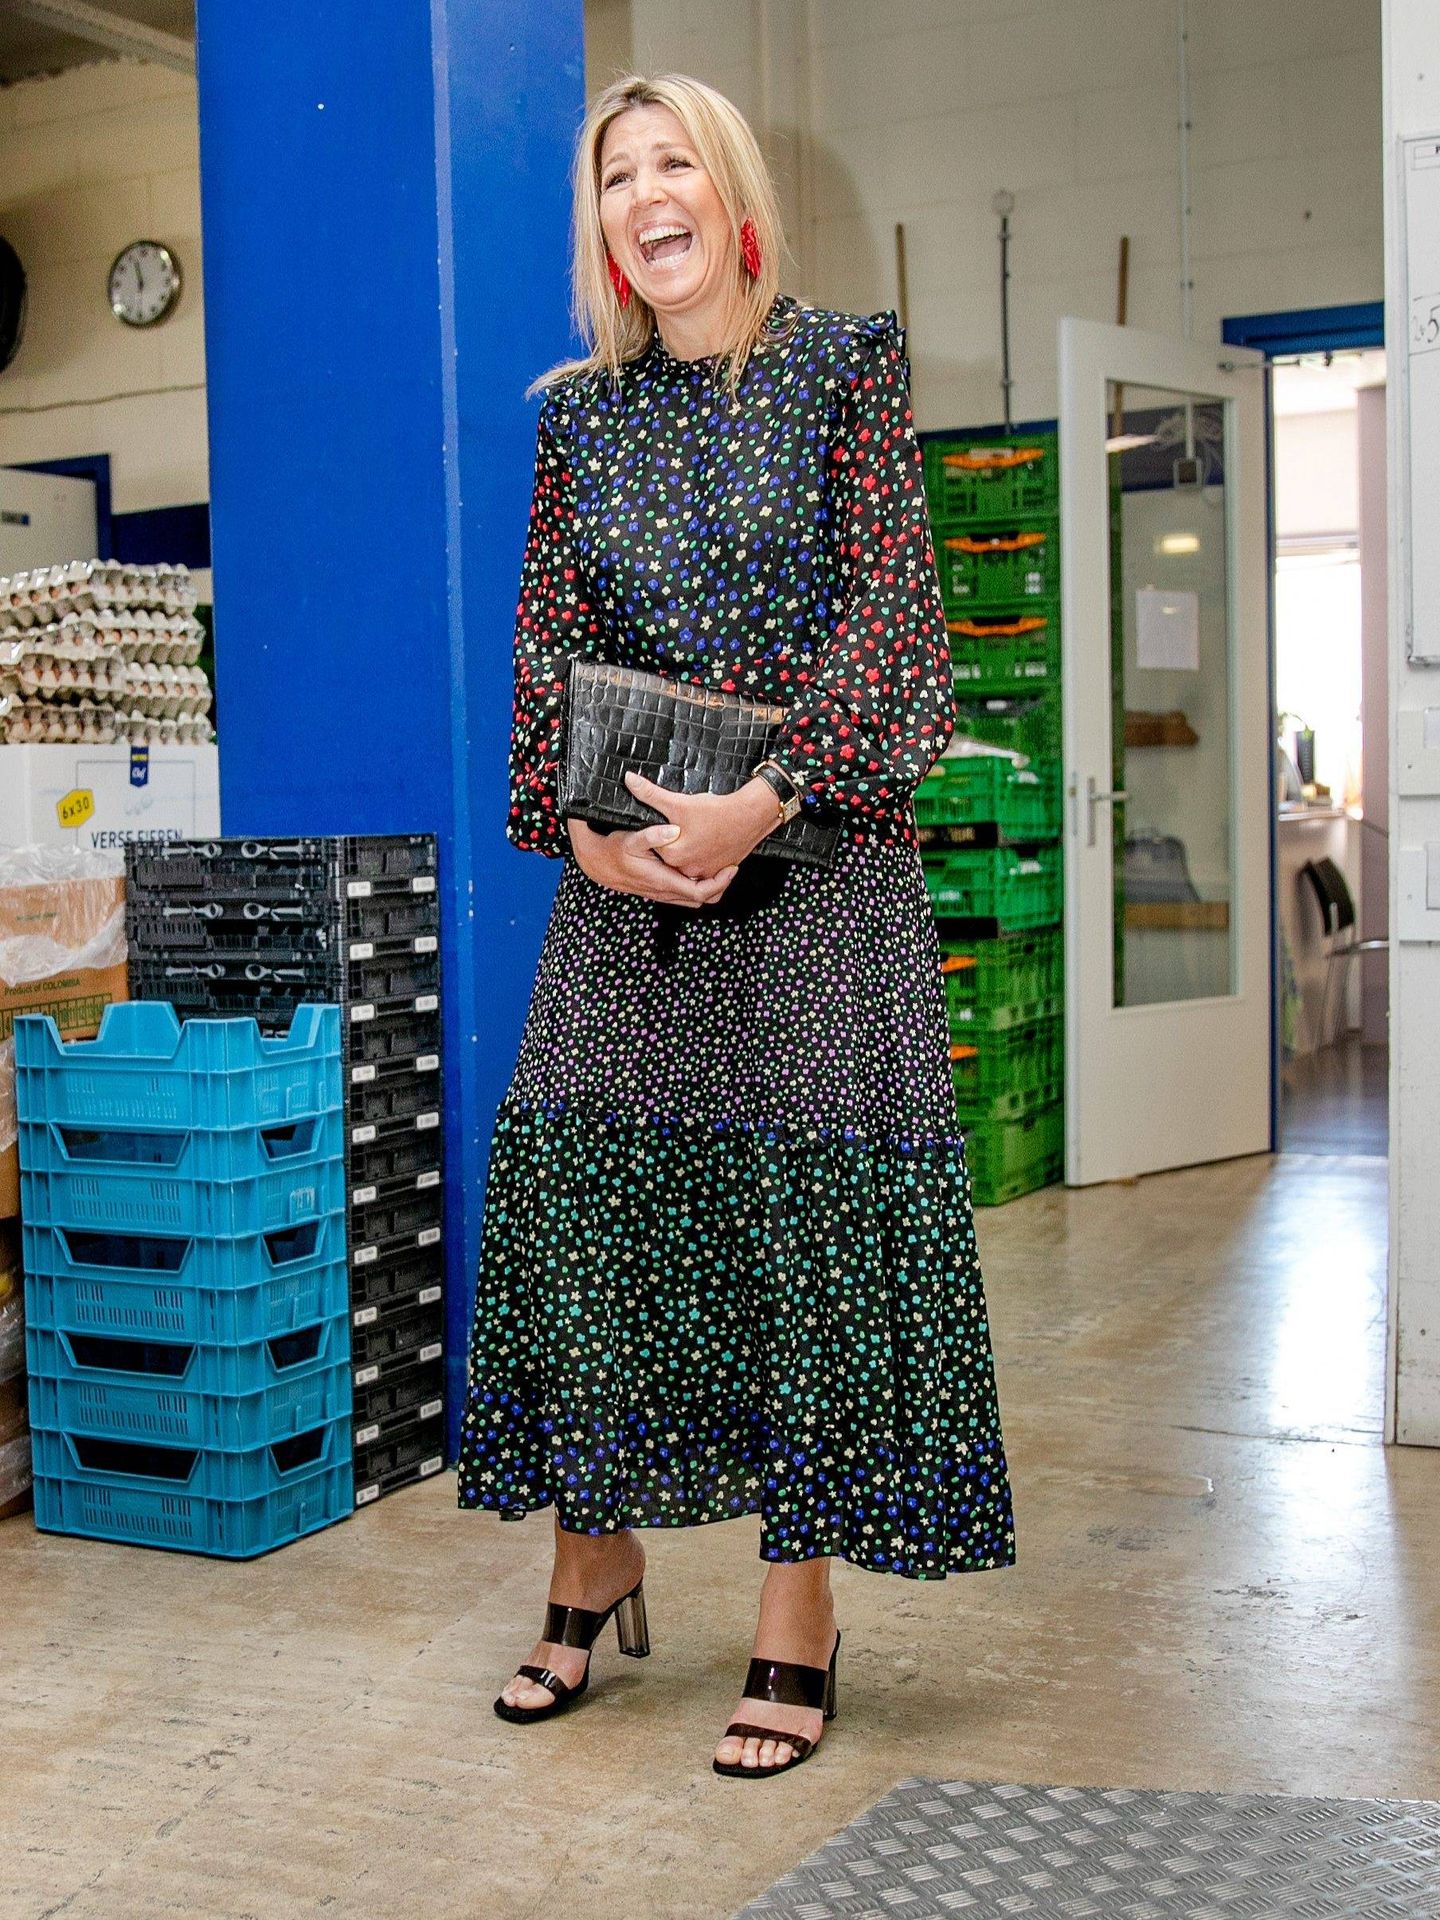 La reina Máxima, durante su visita a un Banco de Alimentos. (Cordon Press)